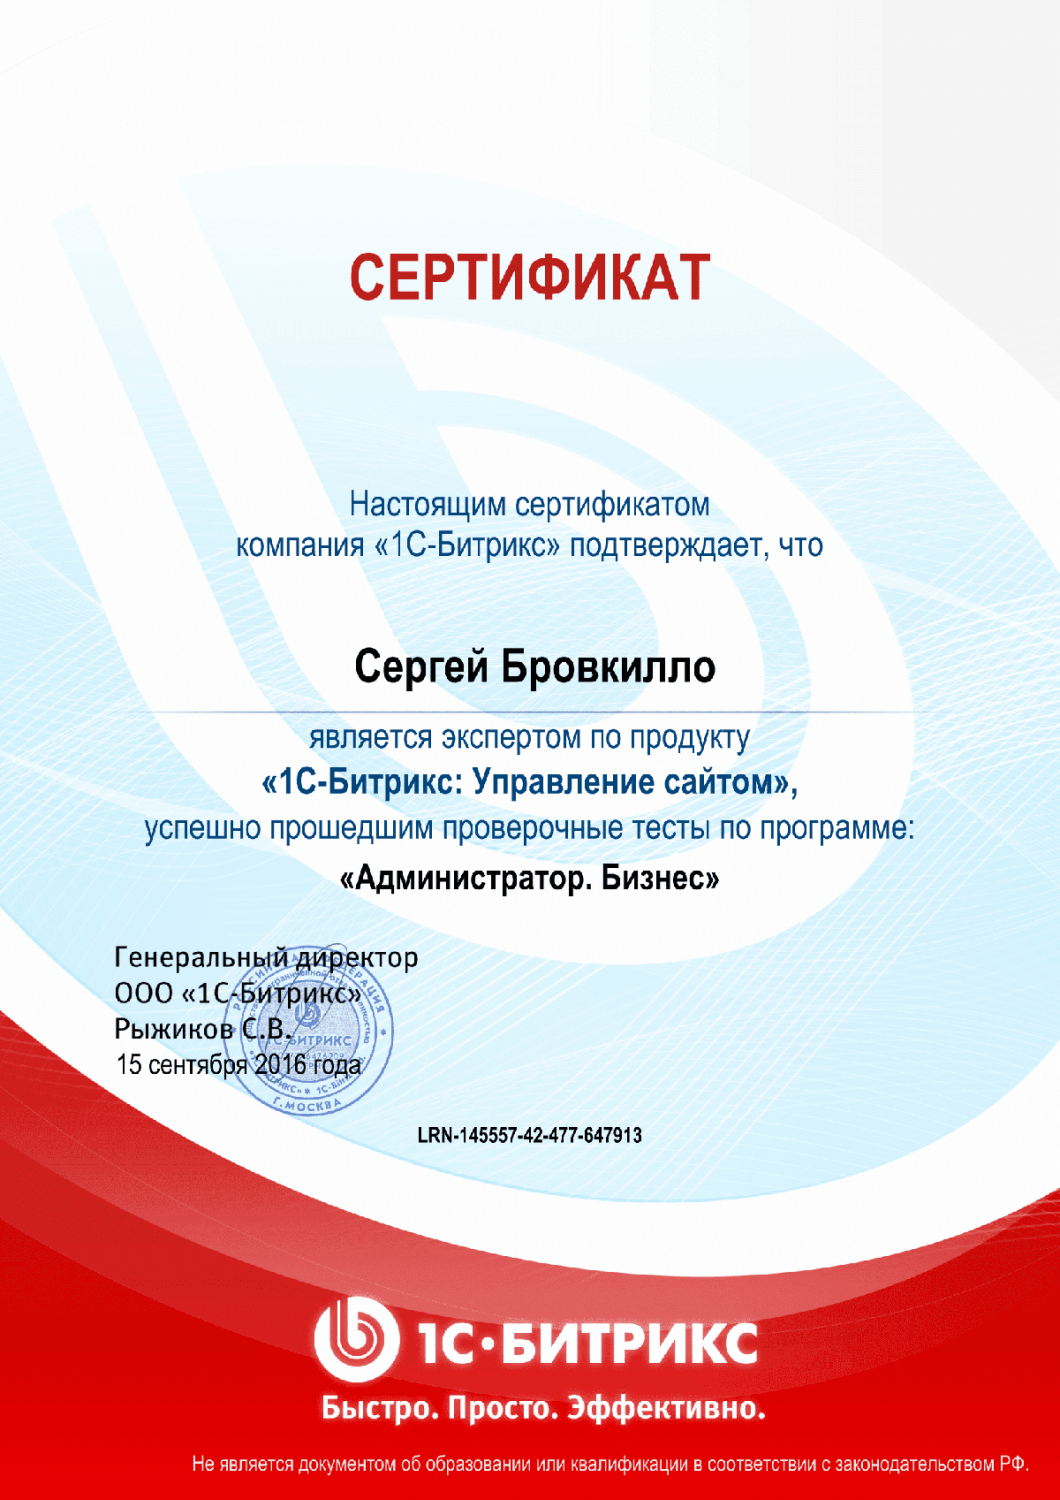 Сертификат эксперта по программе "Администратор. Бизнес" в Саранска